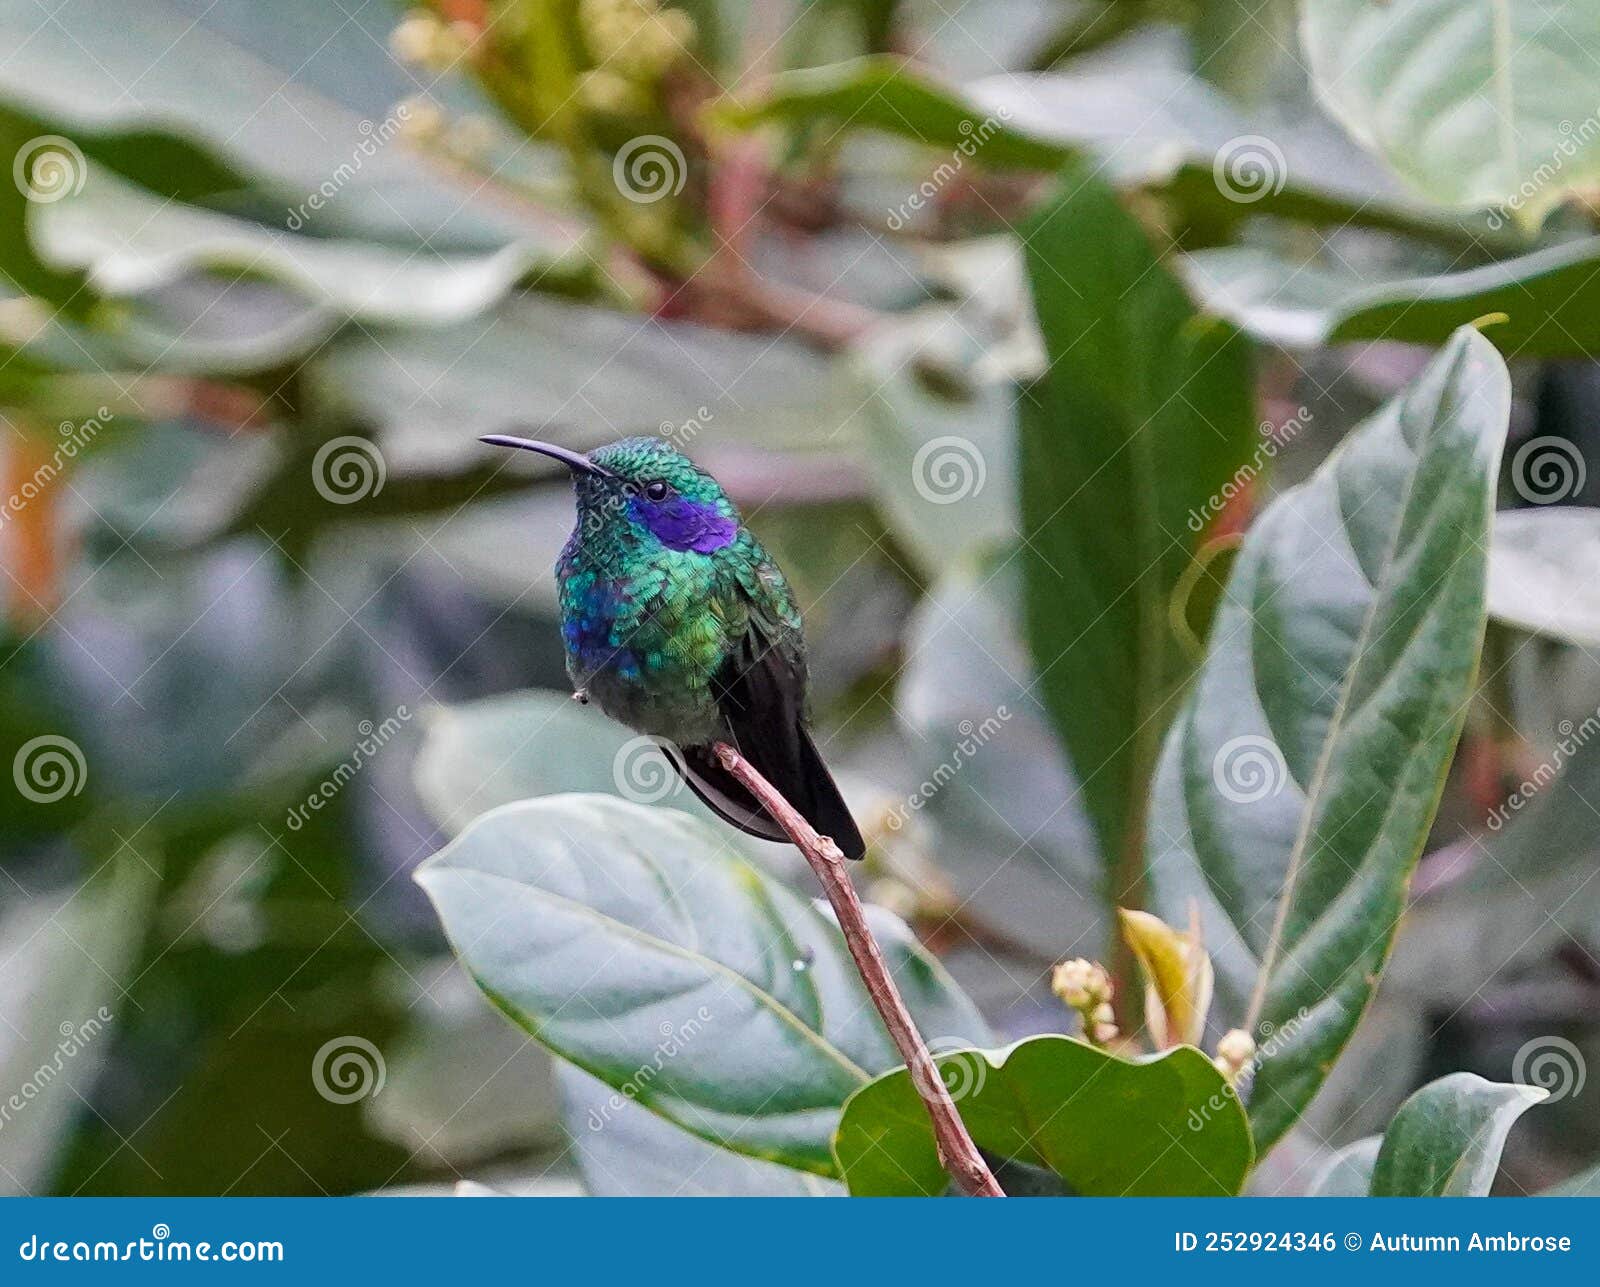 vibrant metalica green lesser violetear hummingbird